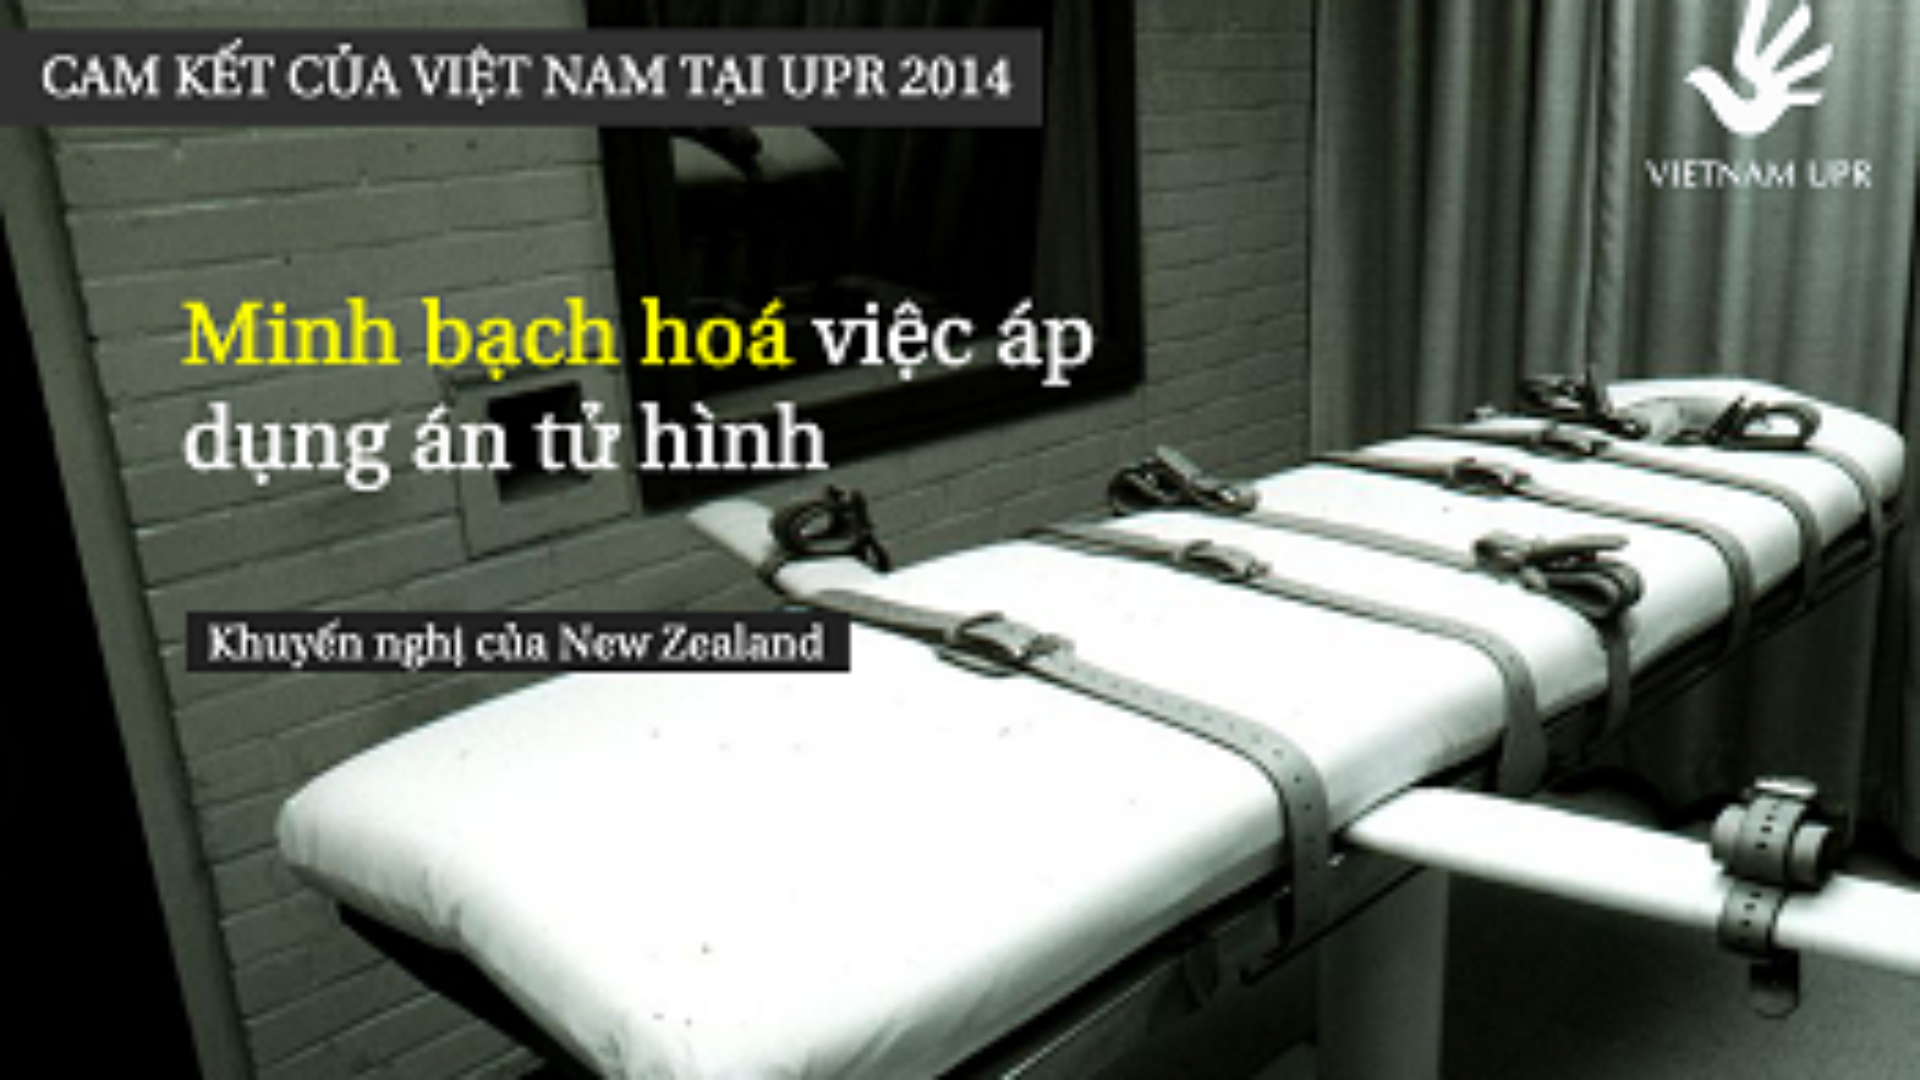 (Tiếng Việt) Bạn có biết: Minh bạch hóa việc sử dụng án Tử hình – Những cam kết của Việt Nam về án tử hình tại UPR 2014